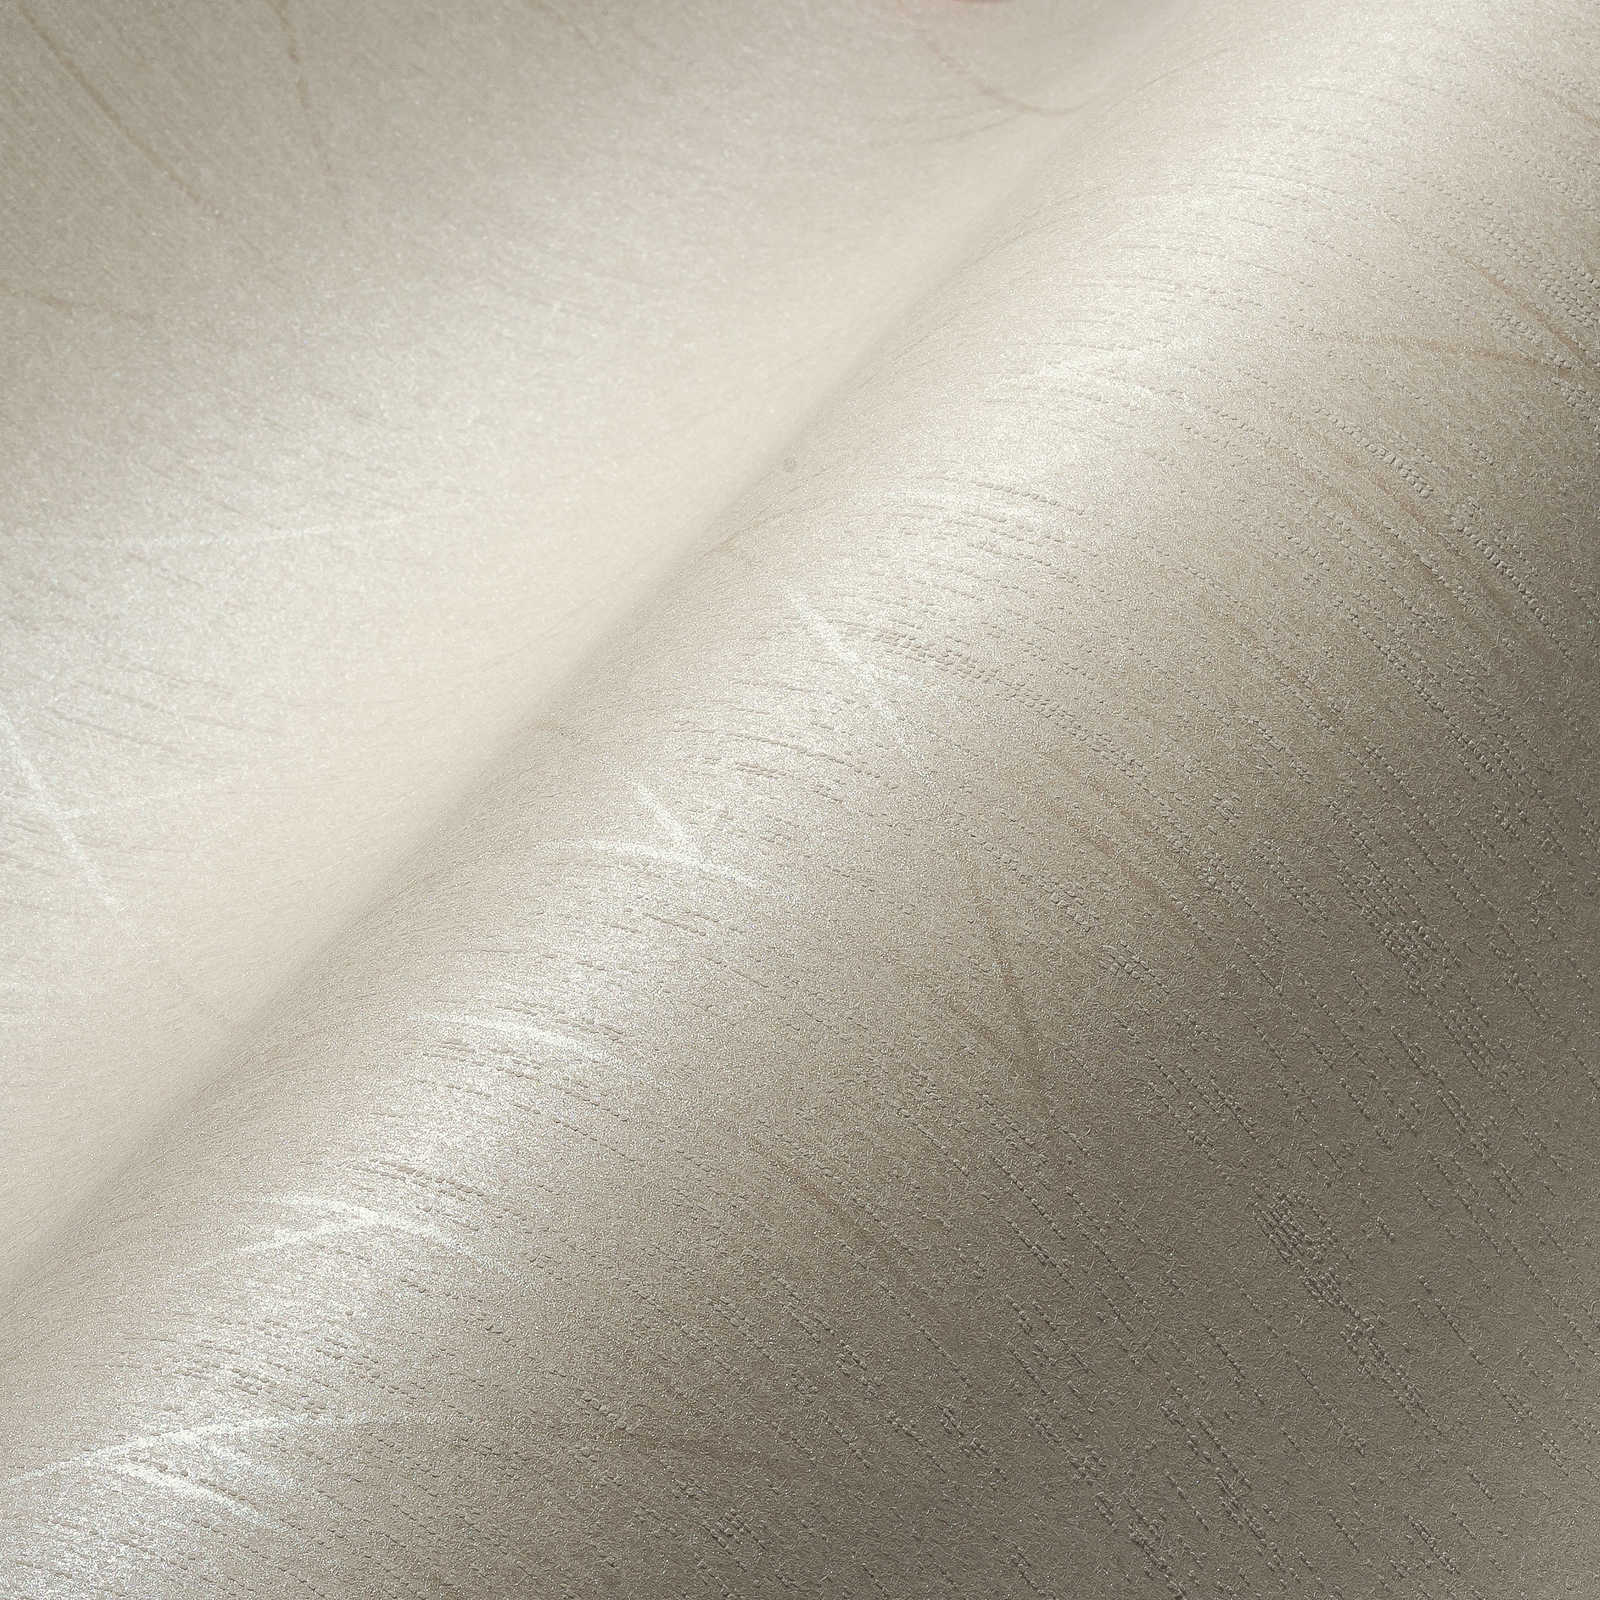             Carta da parati in tessuto non tessuto con effetto lucido e motivi grafici - bianco
        